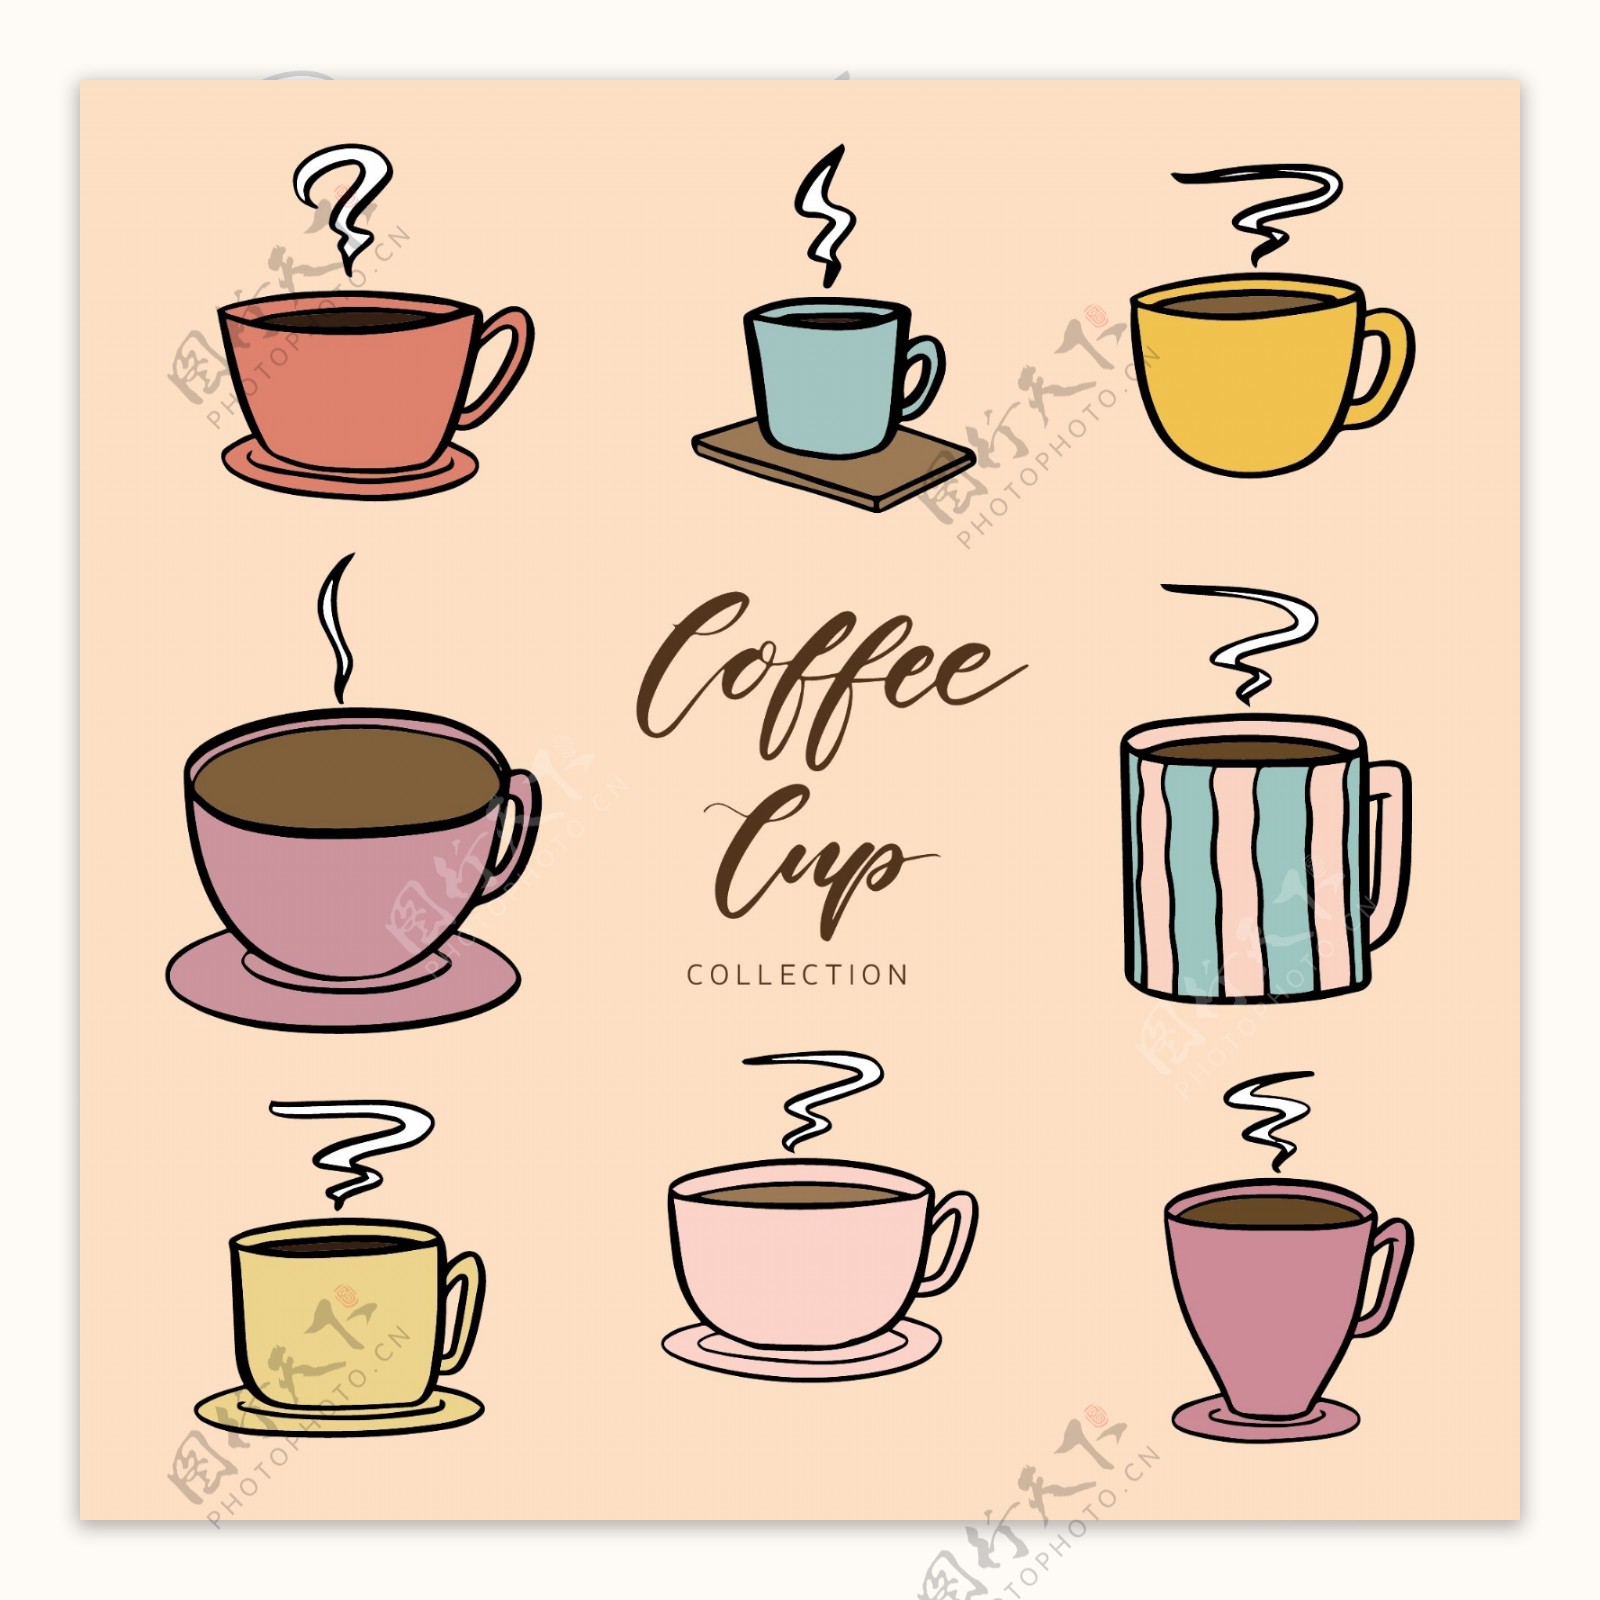 8款彩色卡通咖啡杯插画设计